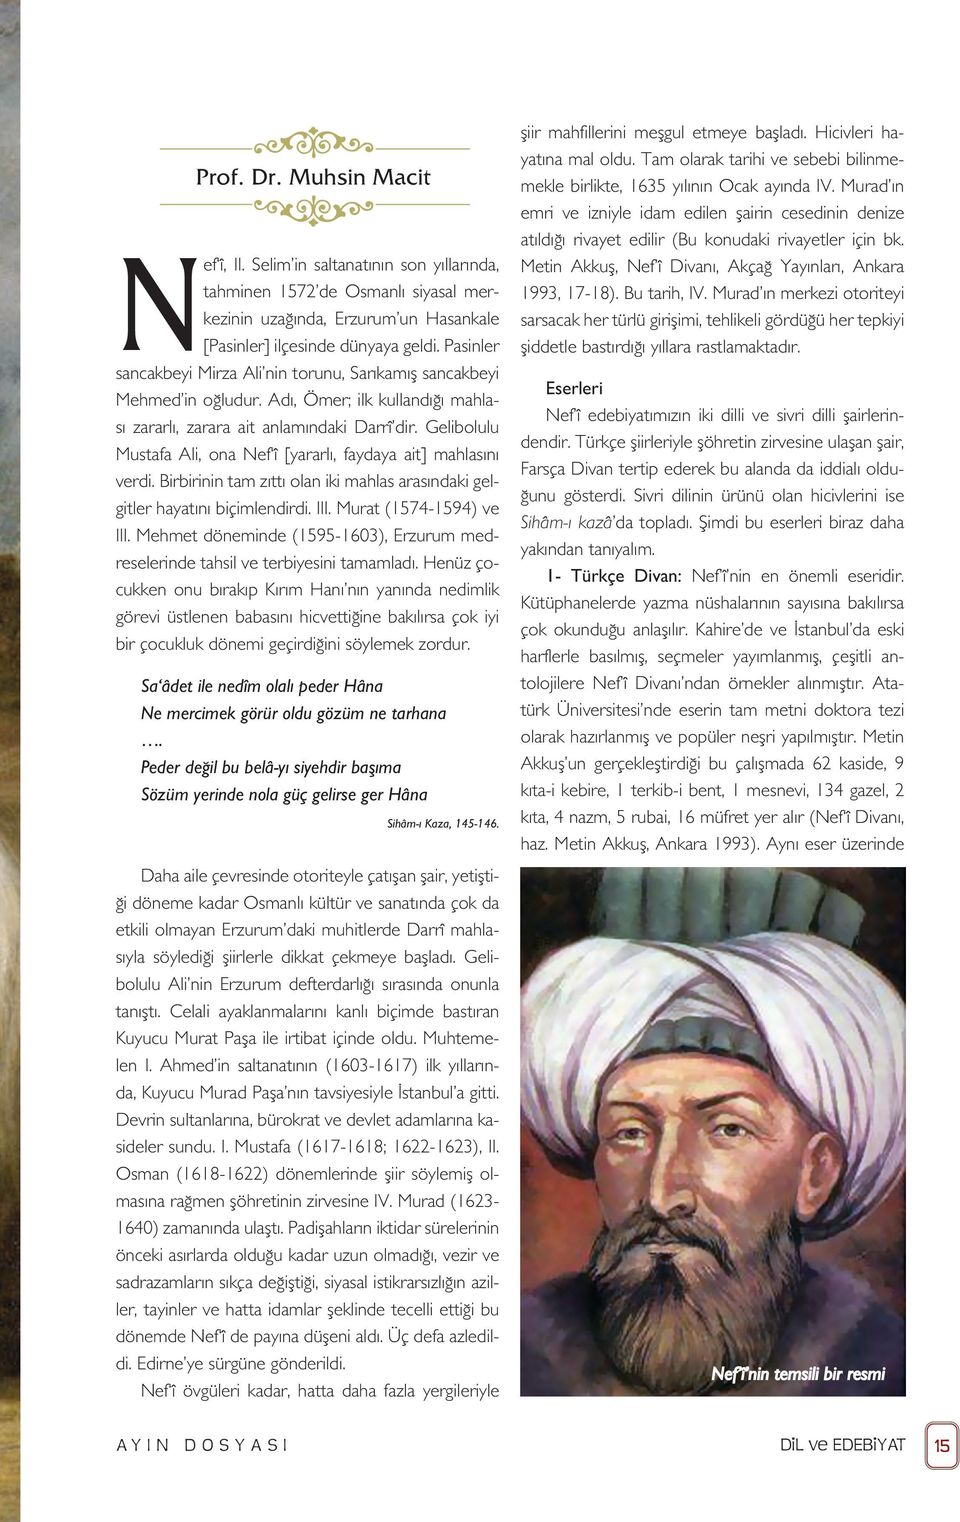 Gelibolulu Mustafa Ali, ona Nef î [yararlı, faydaya ait] mahlasını verdi. Birbirinin tam zıttı olan iki mahlas arasındaki gelgitler hayatını biçimlendirdi. III. Murat (1574-1594) ve III.